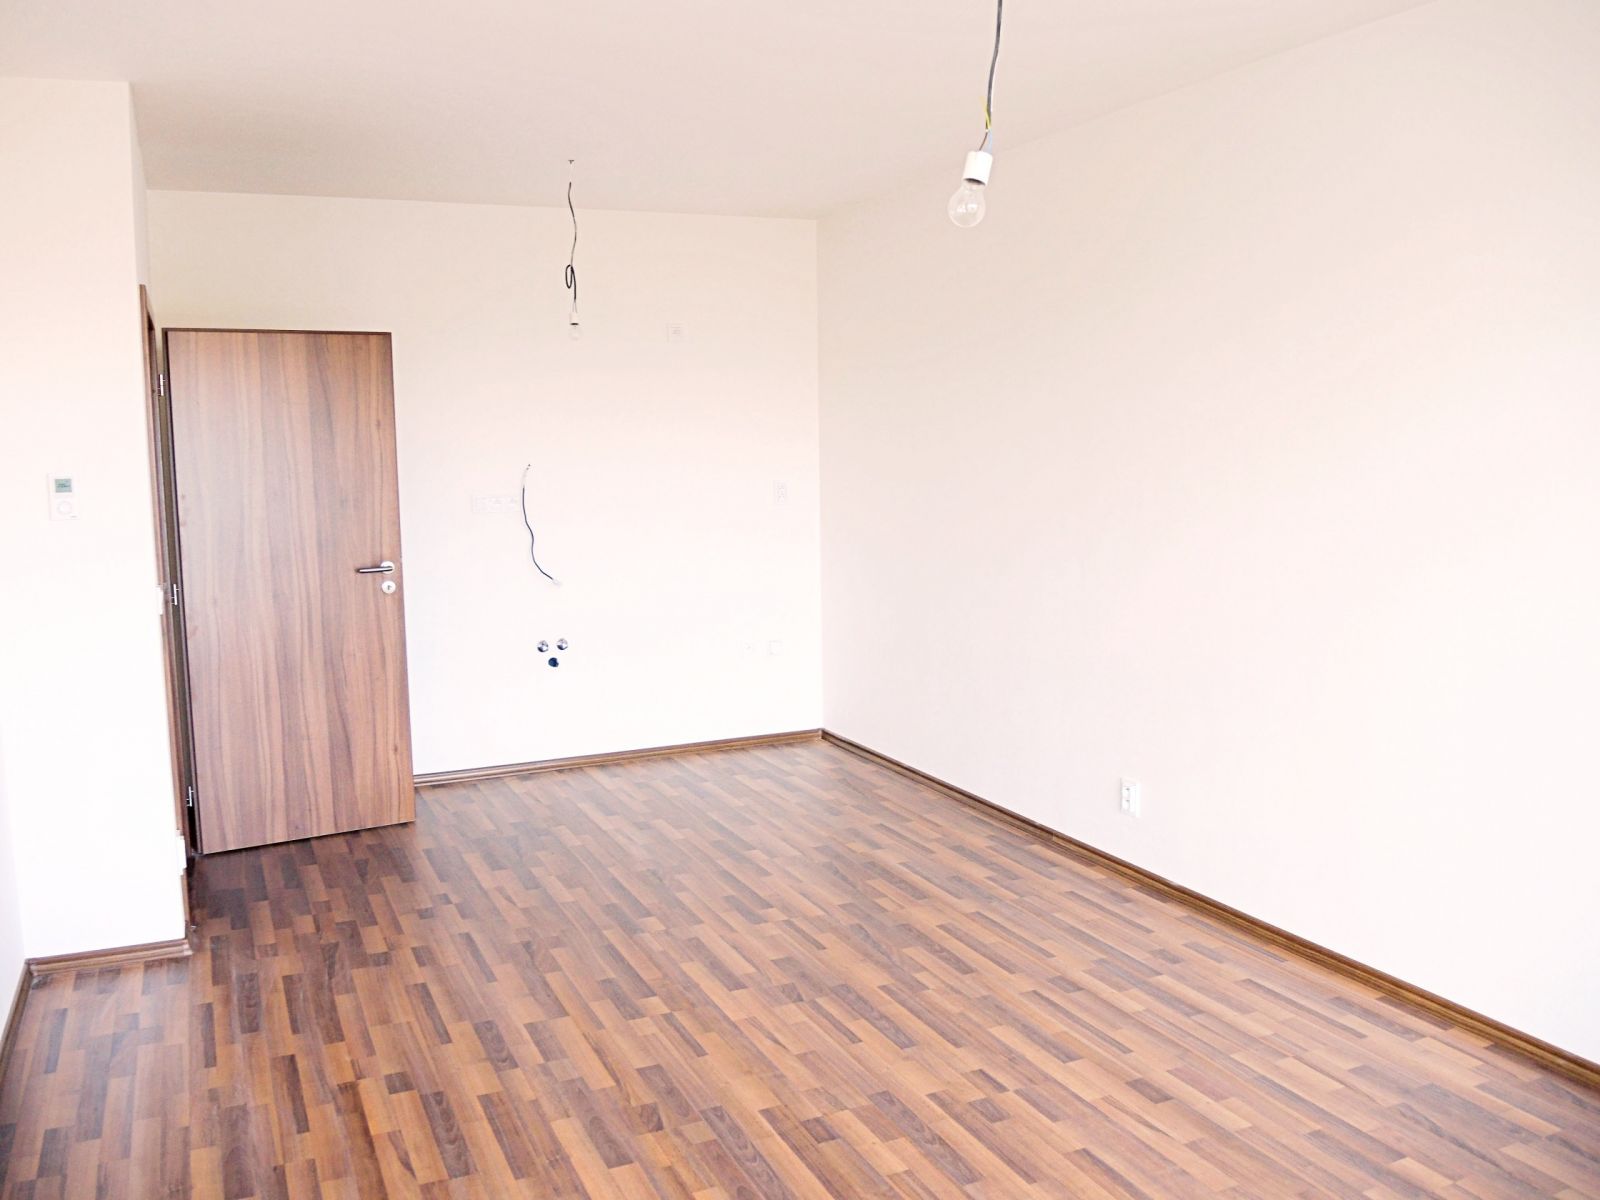 Pronájem bytu v Olomouci ul. Janského 2+KK 52,37 m2 + terasa 9,67 m2 + park. stání v suterénu domu